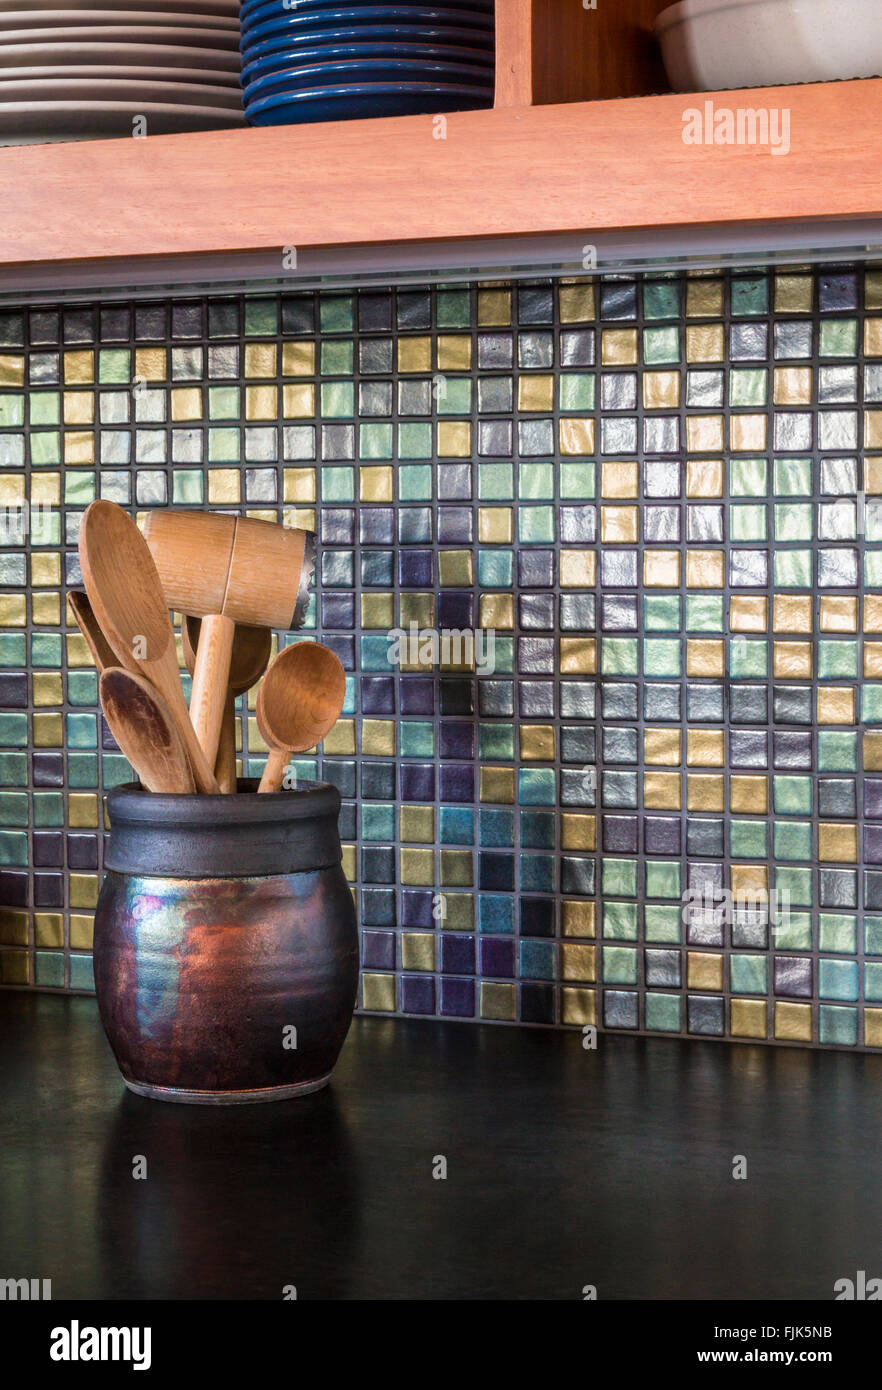 Dettaglio di alta qualità casa contemporanea cucina interno con vetro mosaico backsplash, calcestruzzo bancone in legno e utensili in ceramica raku brocca Foto Stock